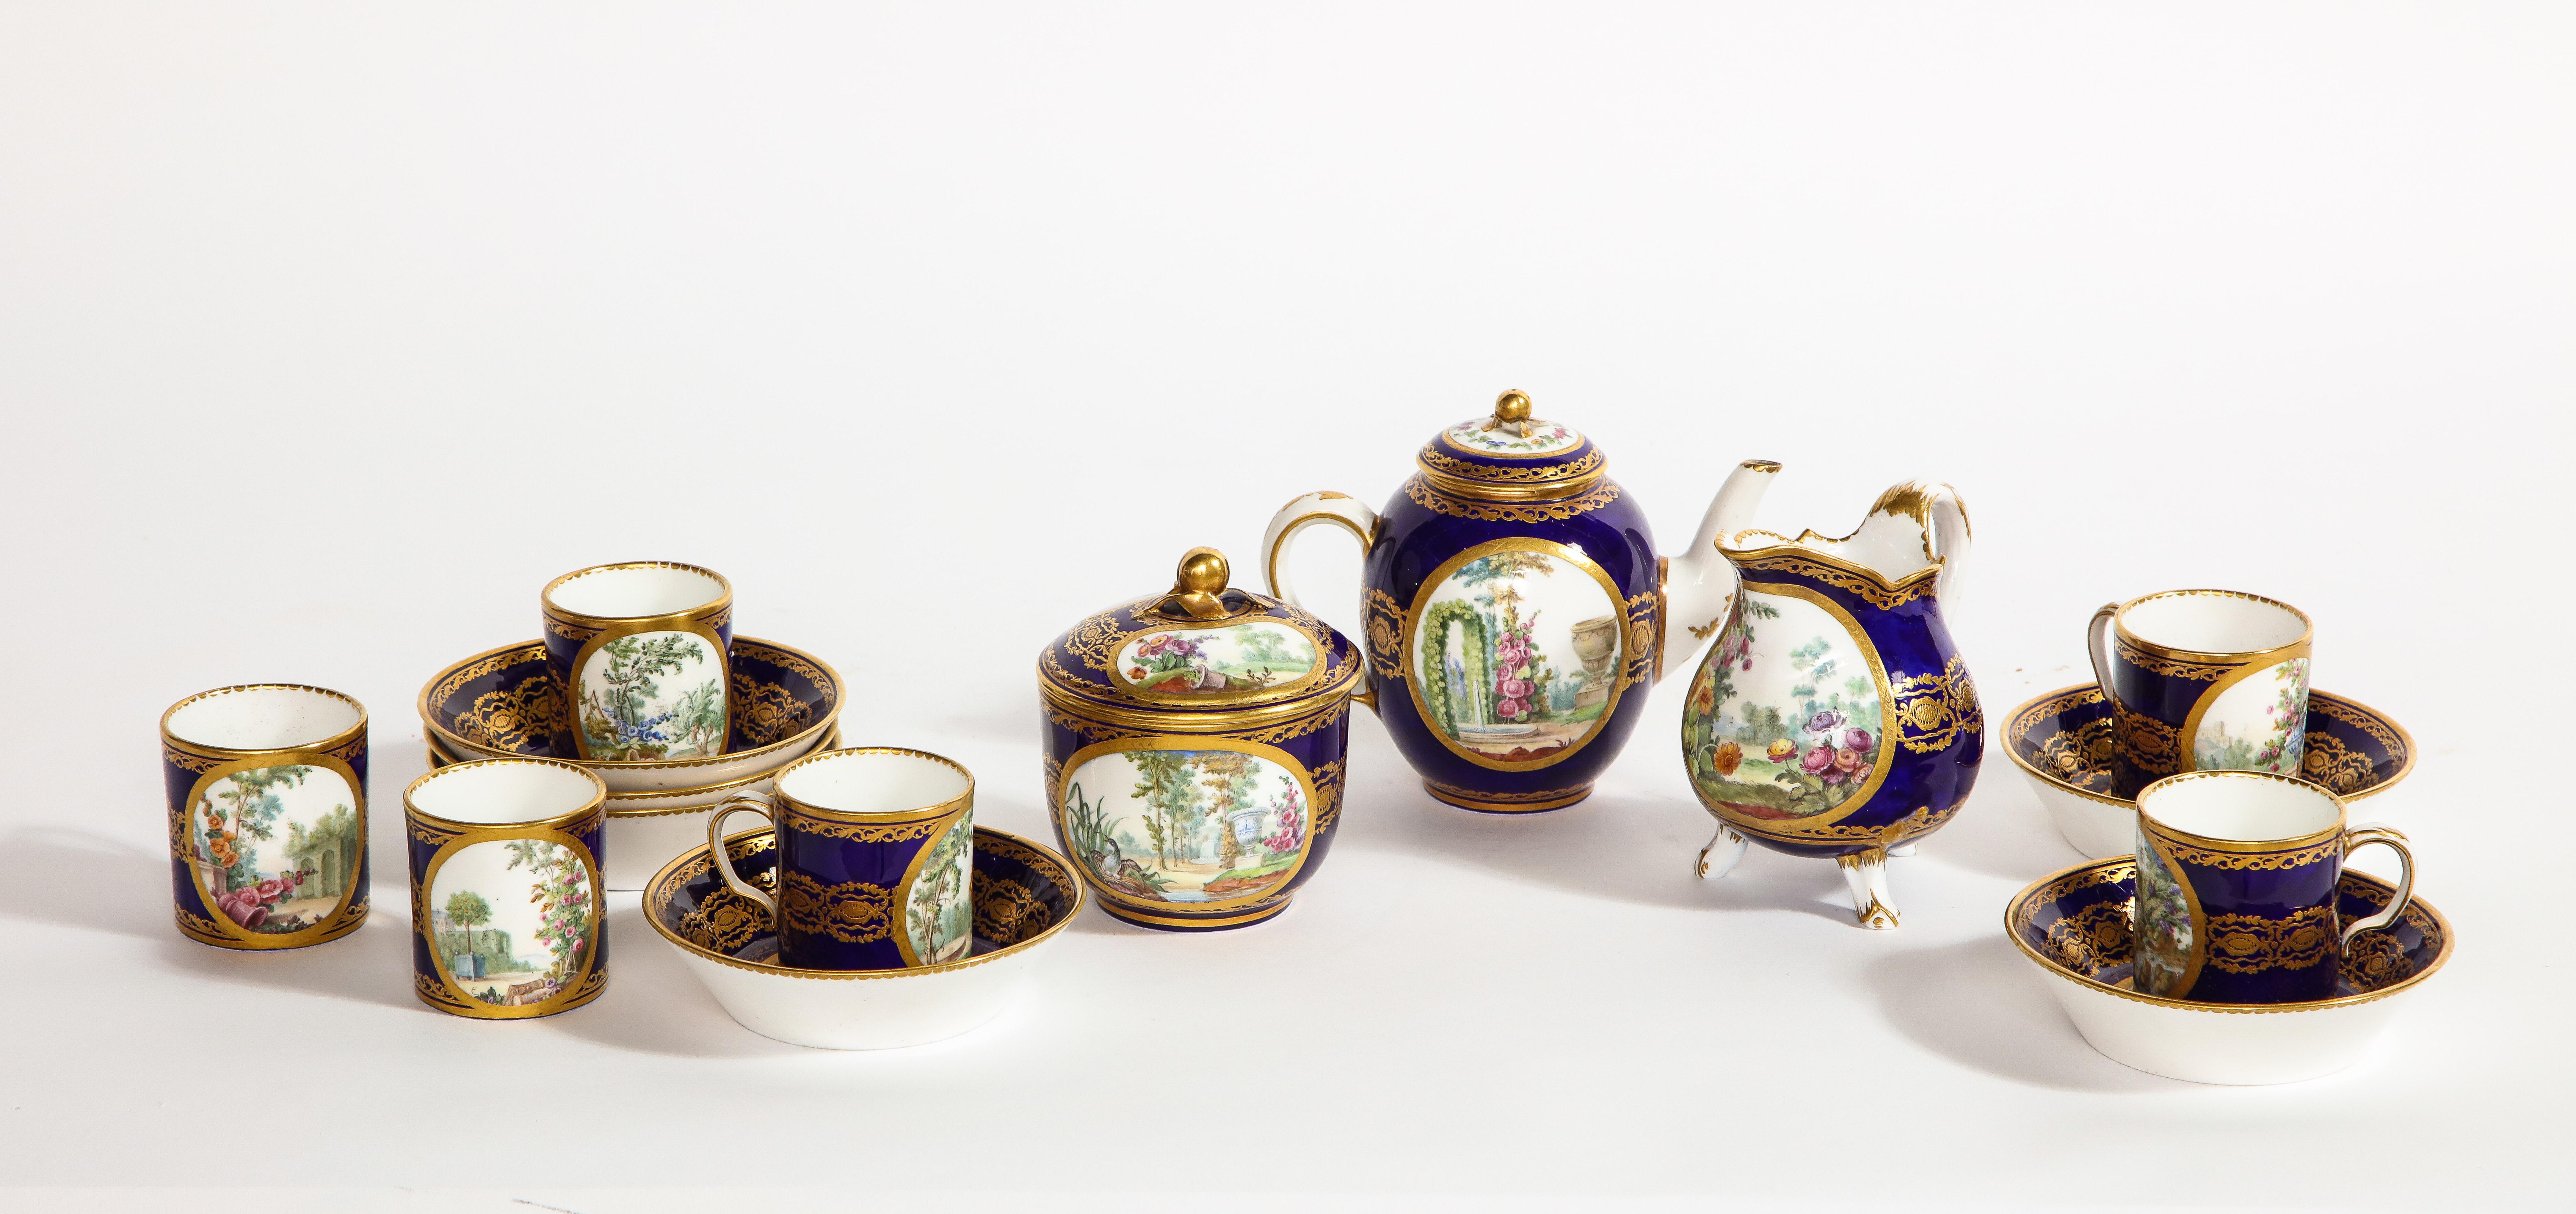 Doré Service à thé complet en porcelaine de Sèvres du XVIIIe siècle, avec marque de peintres et de guildes